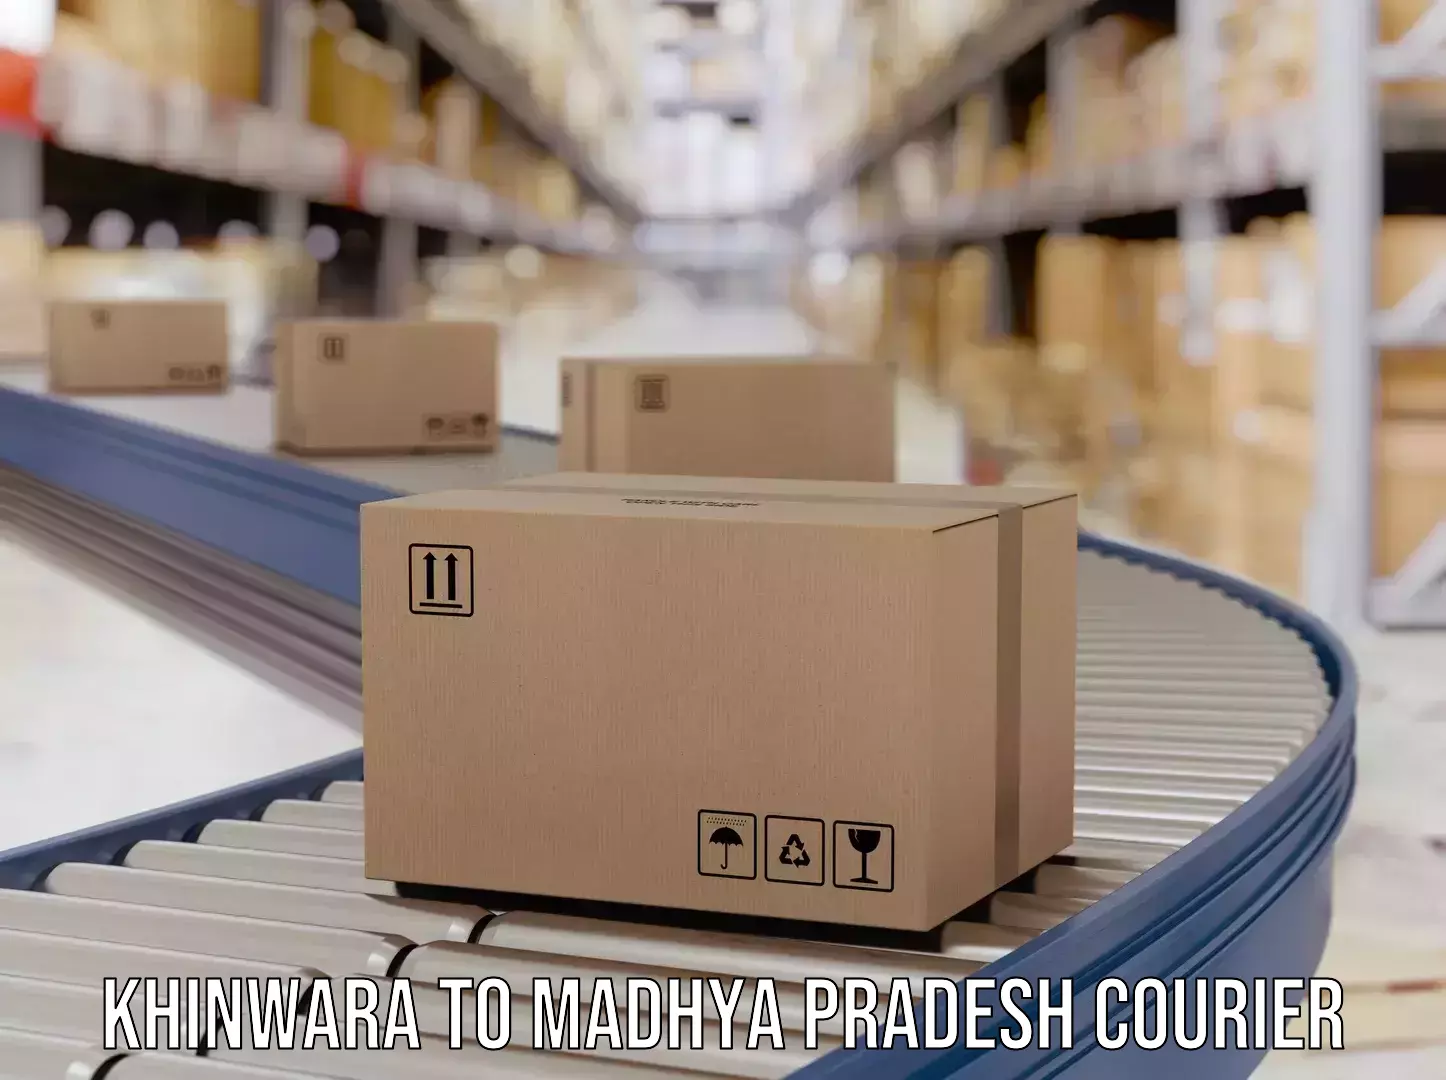 Lightweight parcel options Khinwara to Mundi